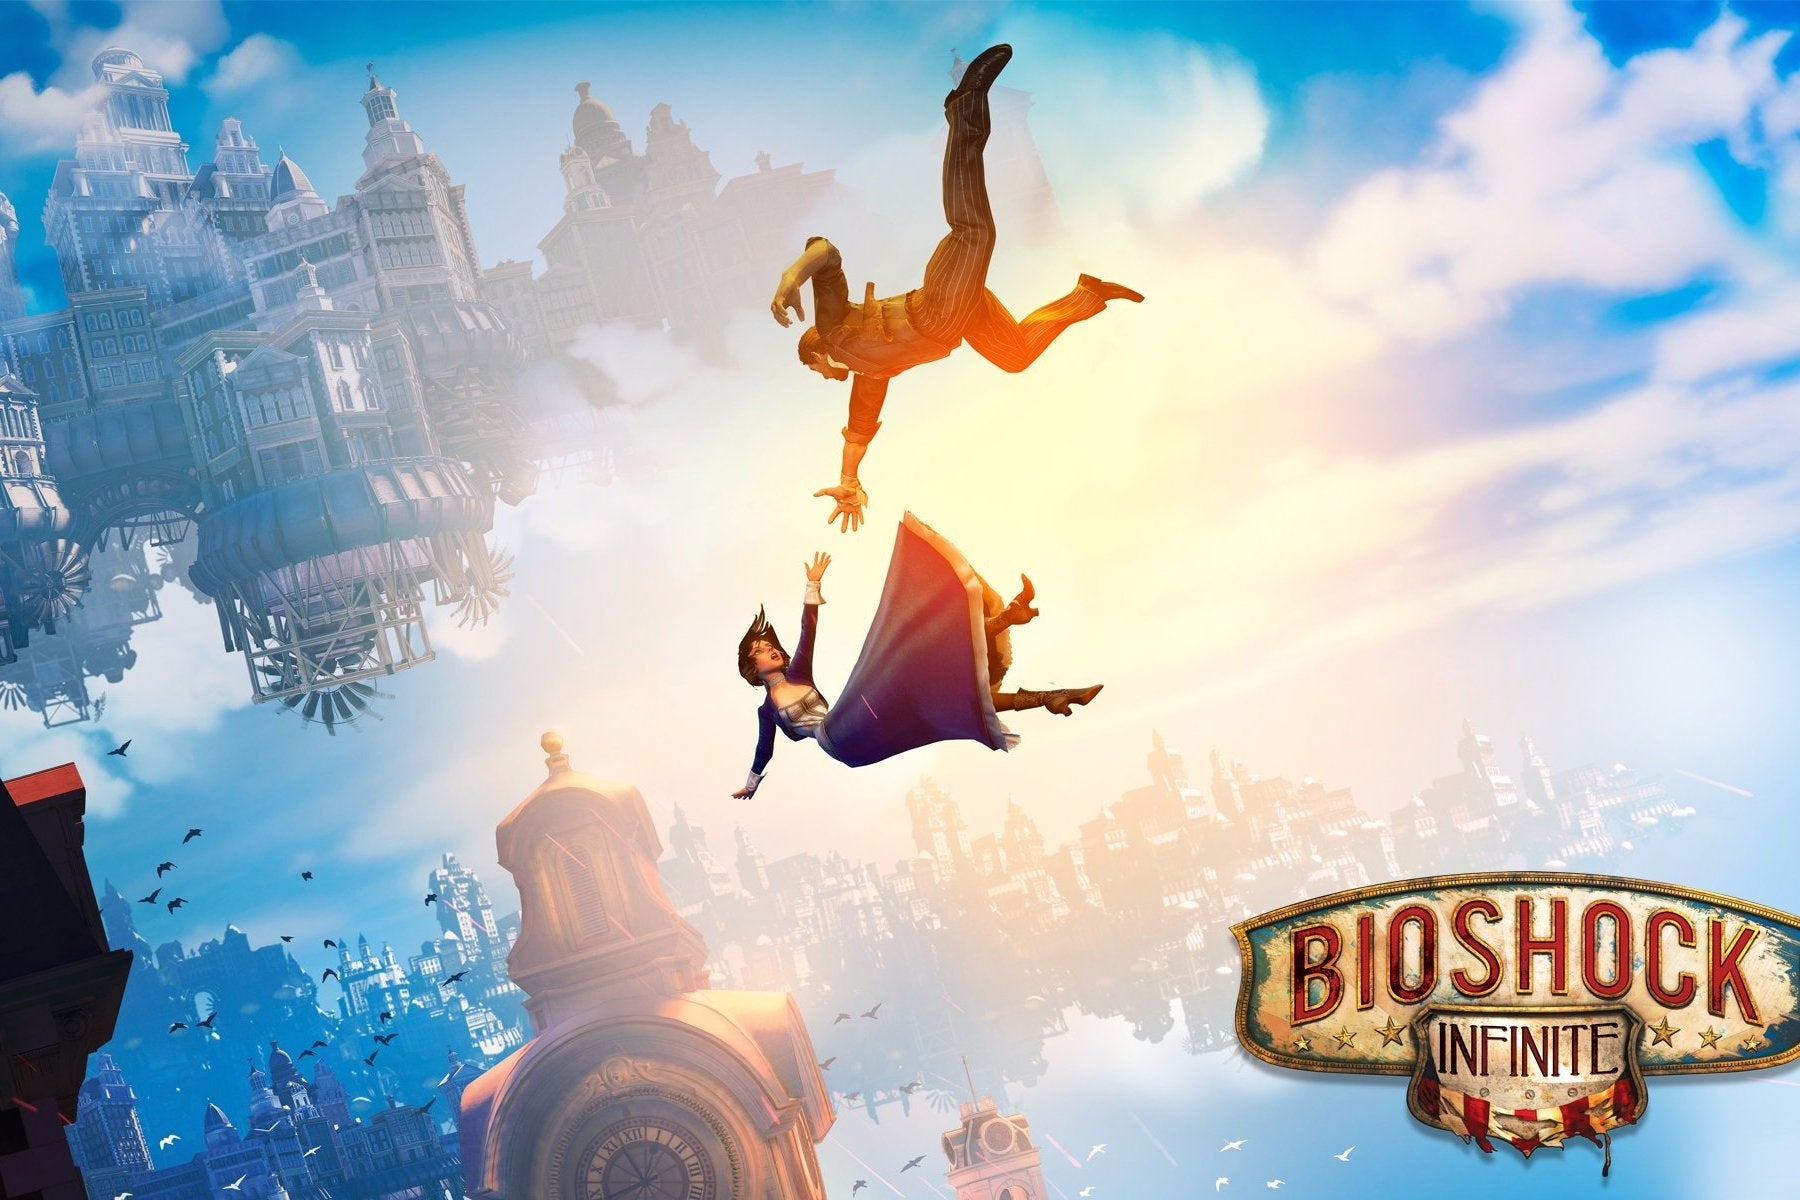 Imagem para BioShock Infinite para PC disponível por 1 euro